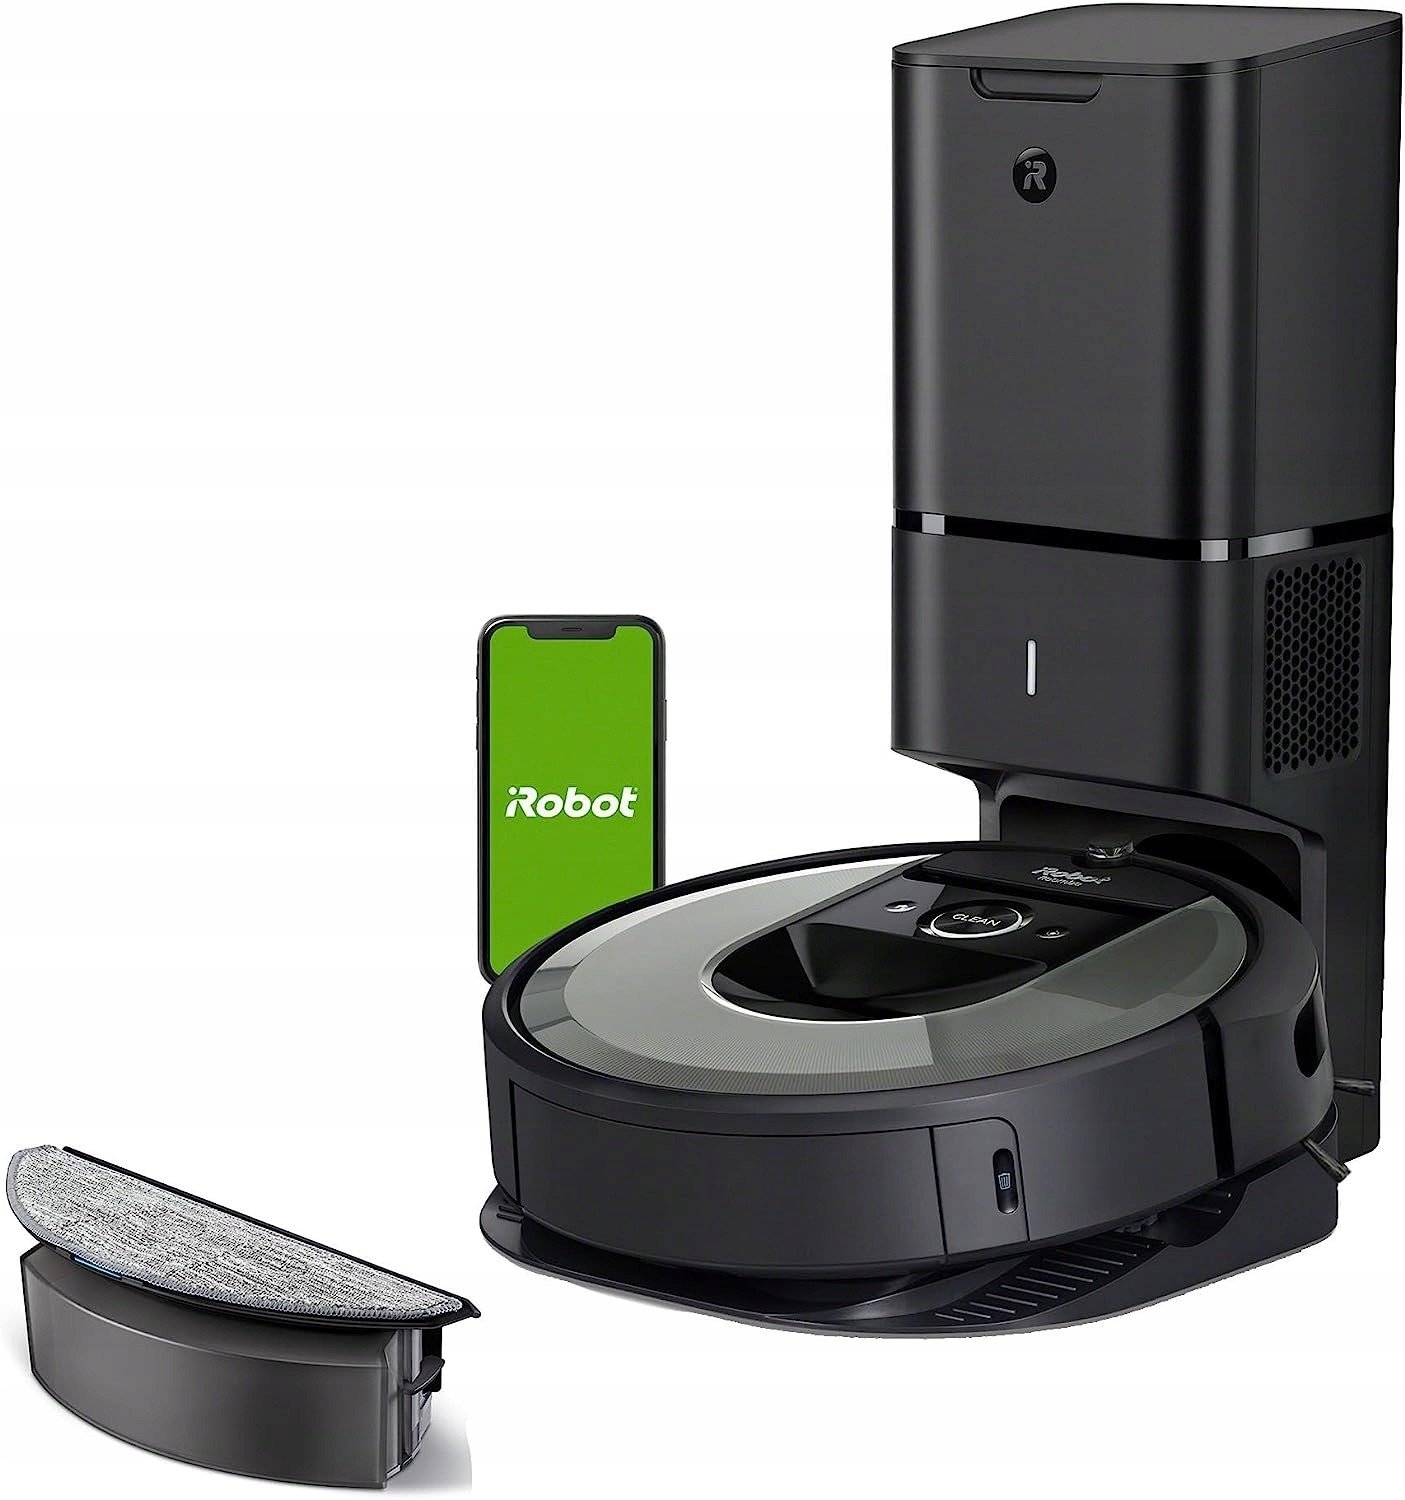 Robotický vysavač iRobot Roomba Combo i8+ i8576 vysávání/mopování stanice